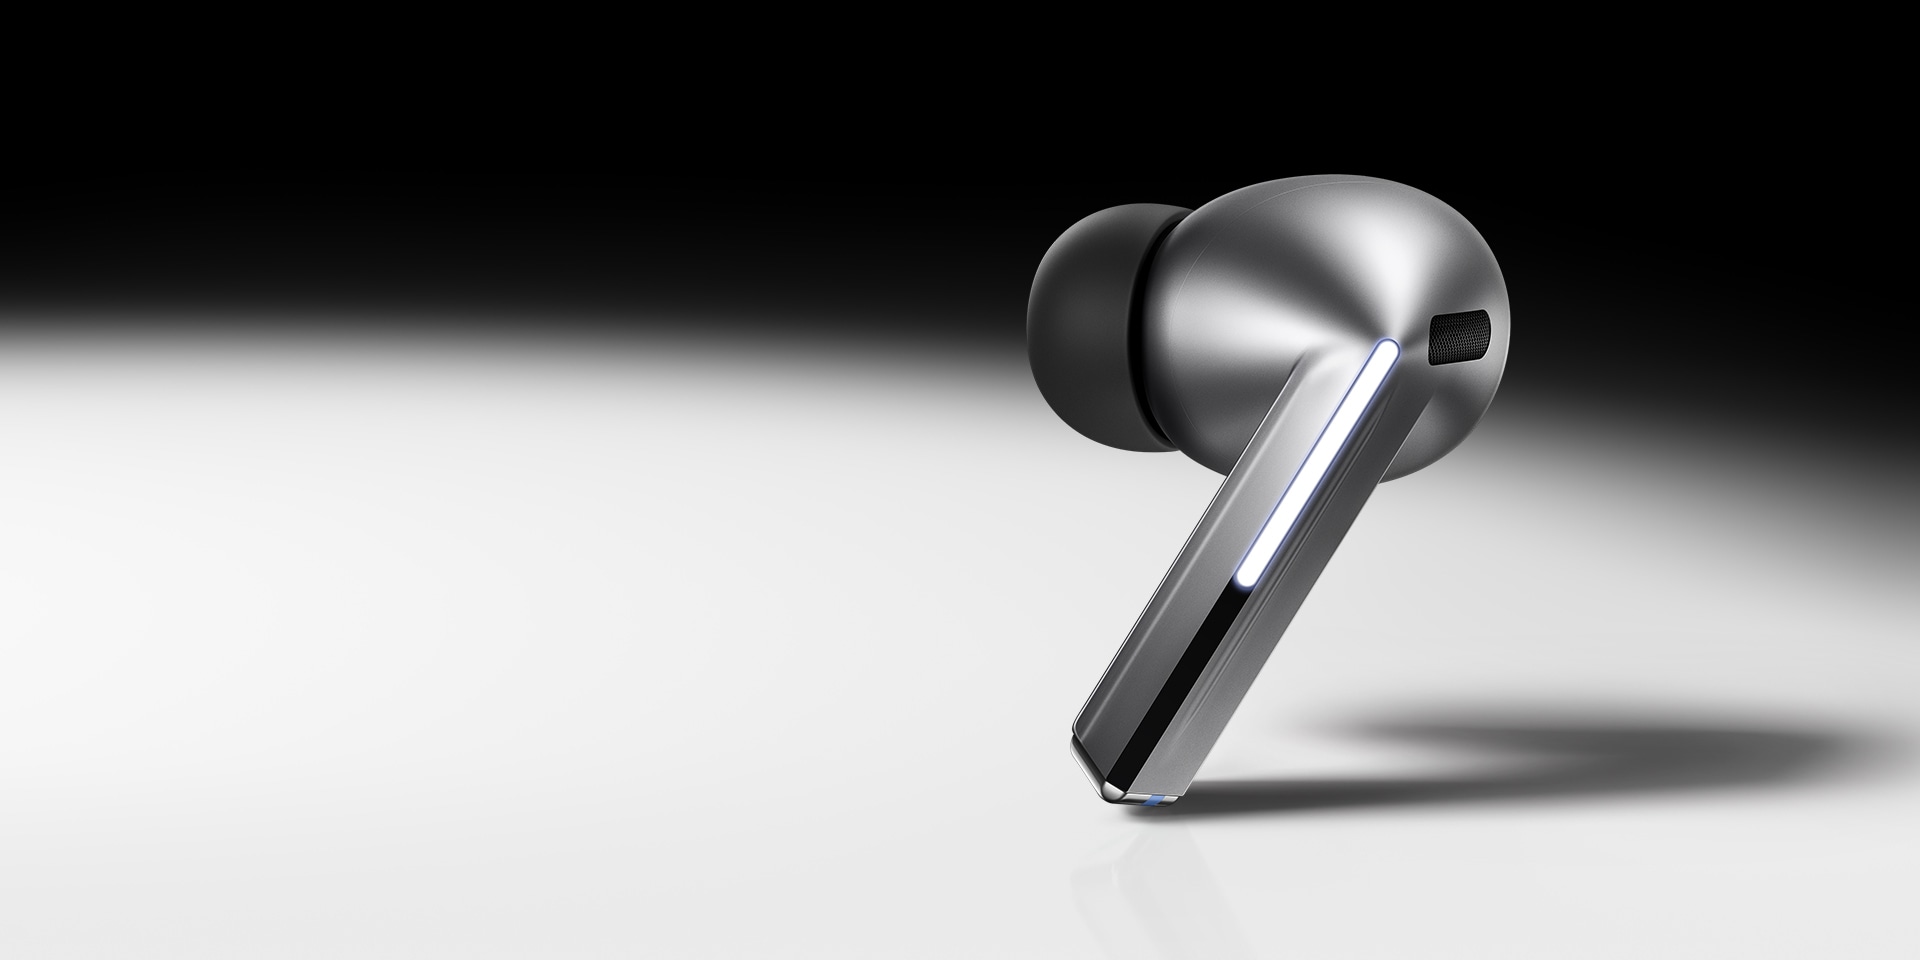 אוזניית Galaxy Buds3 Pro אחת בצבע כסף על רקע בגוני שחור ולבן מדורגים.